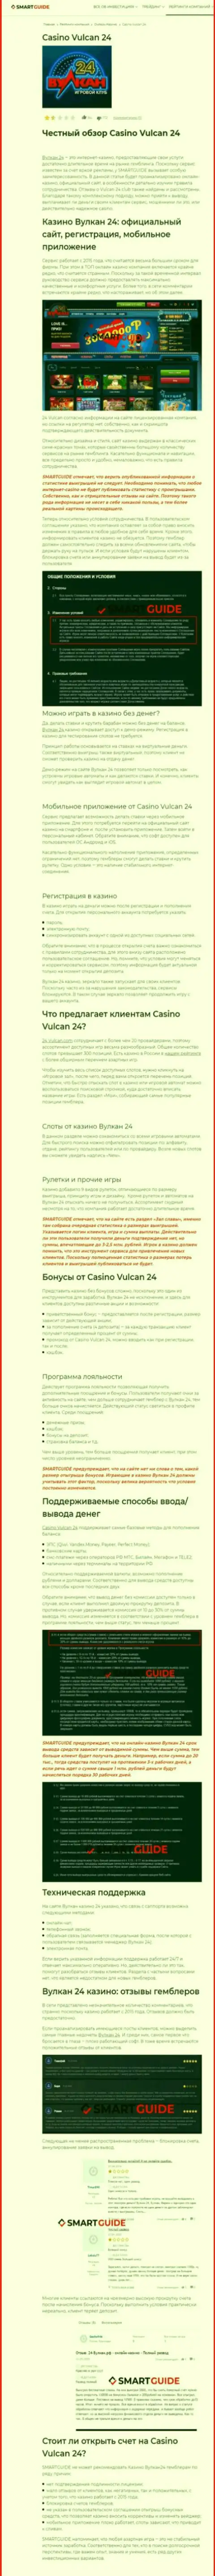 Wulkan 24 - это компания, которая зарабатывает на отжатии финансовых вложений собственных клиентов (обзор деятельности)